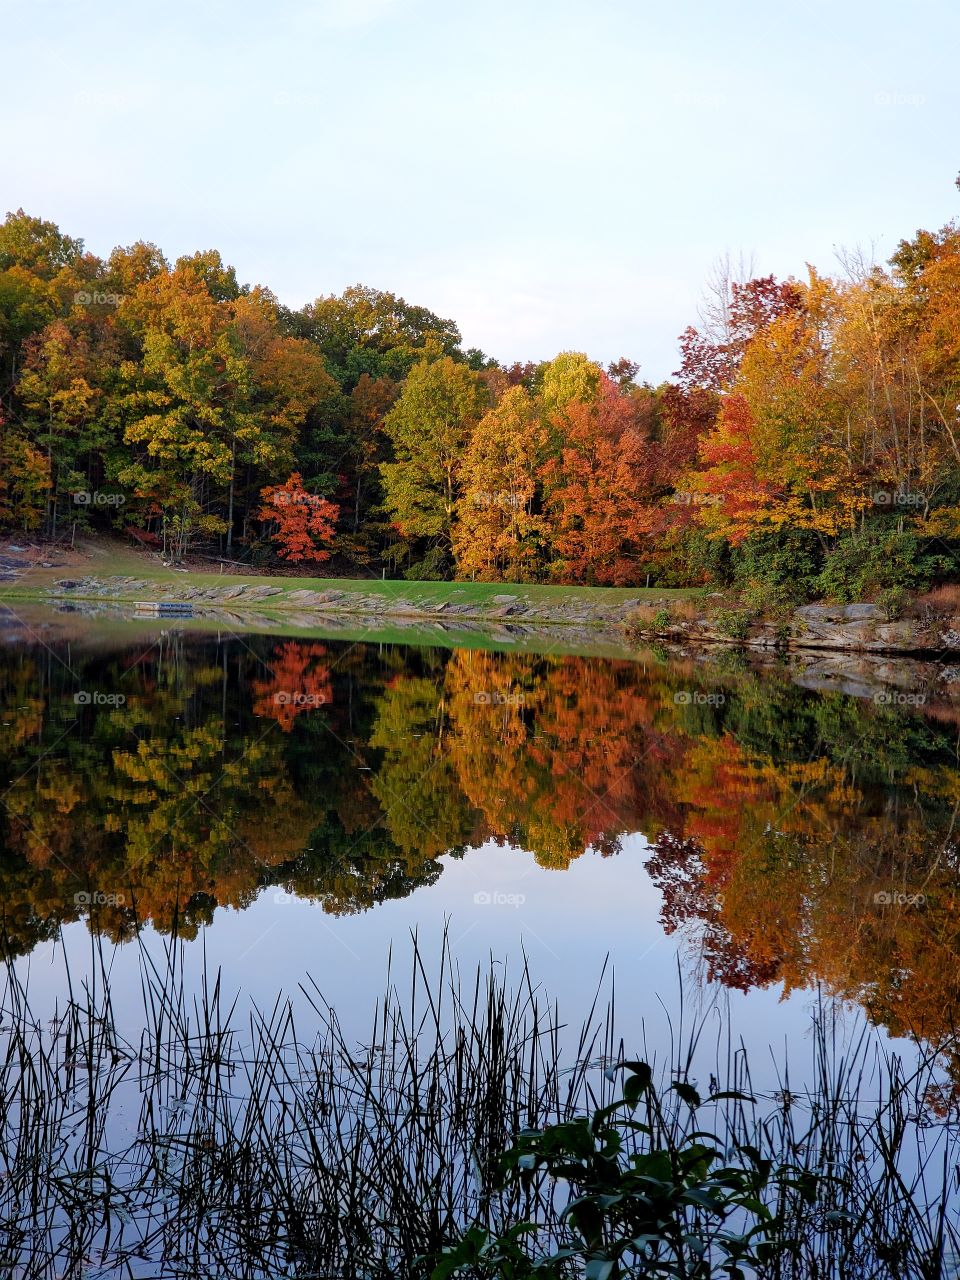 Fall at Boley Lake